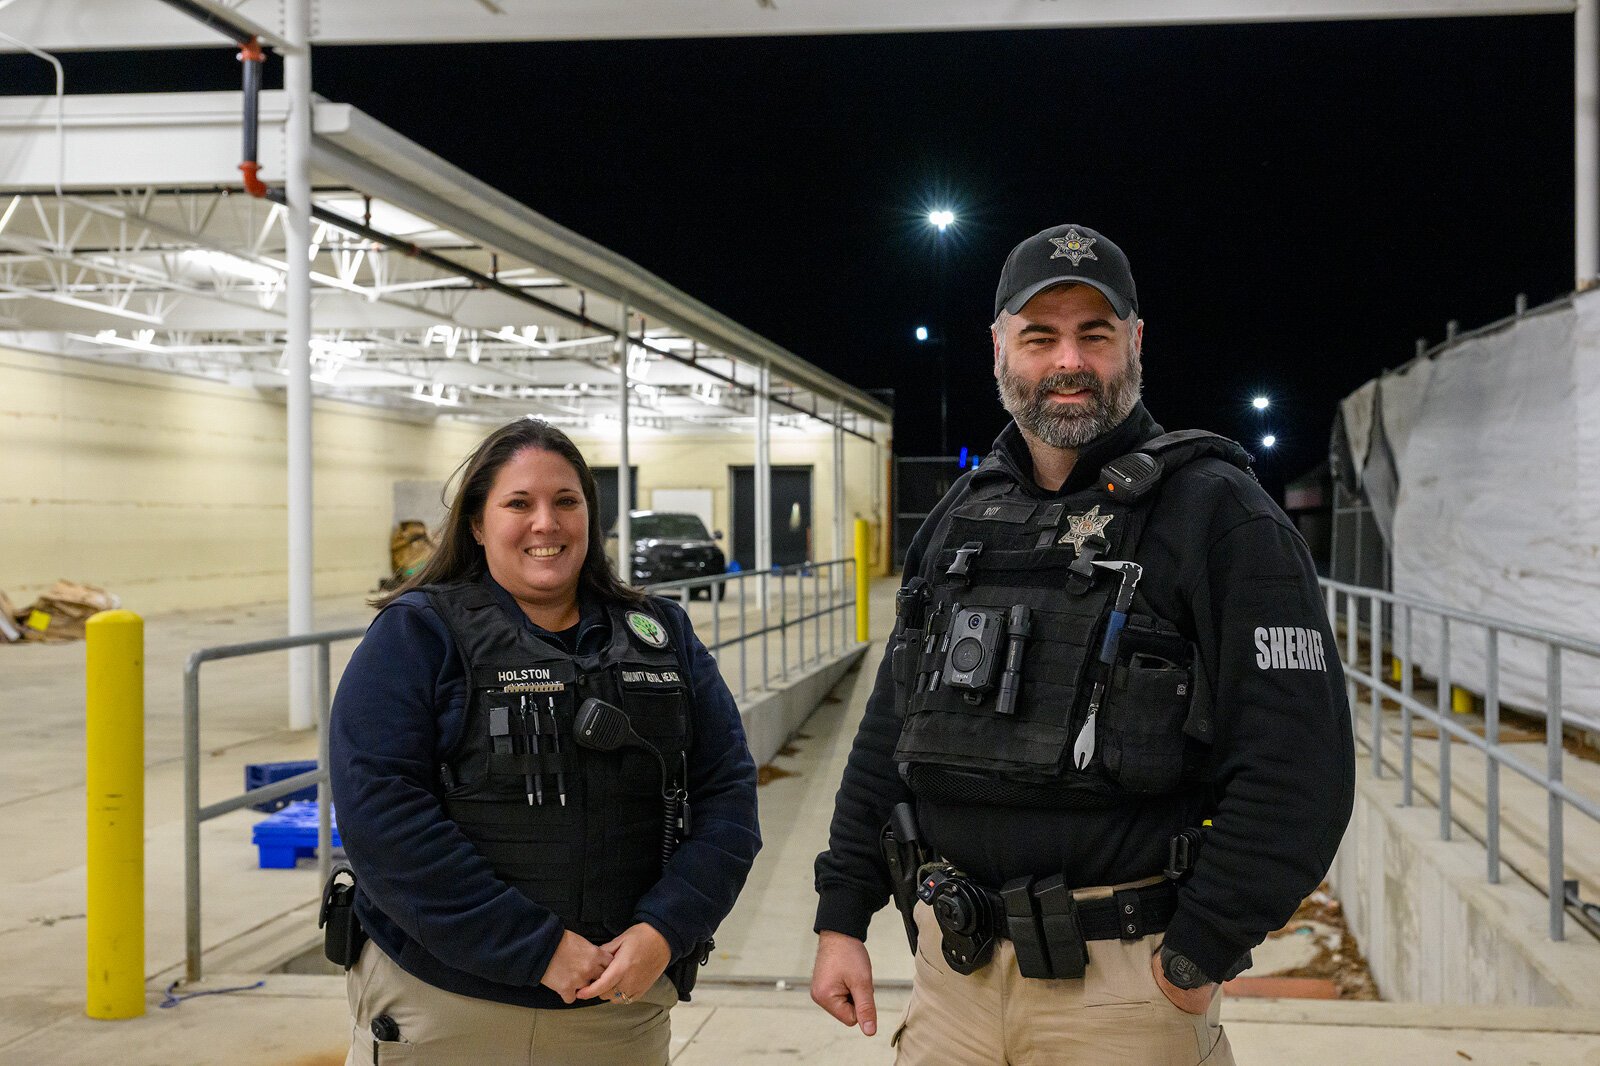 Christine Holston and Deputy James Roy on the night shift along Washtenaw Avenue.